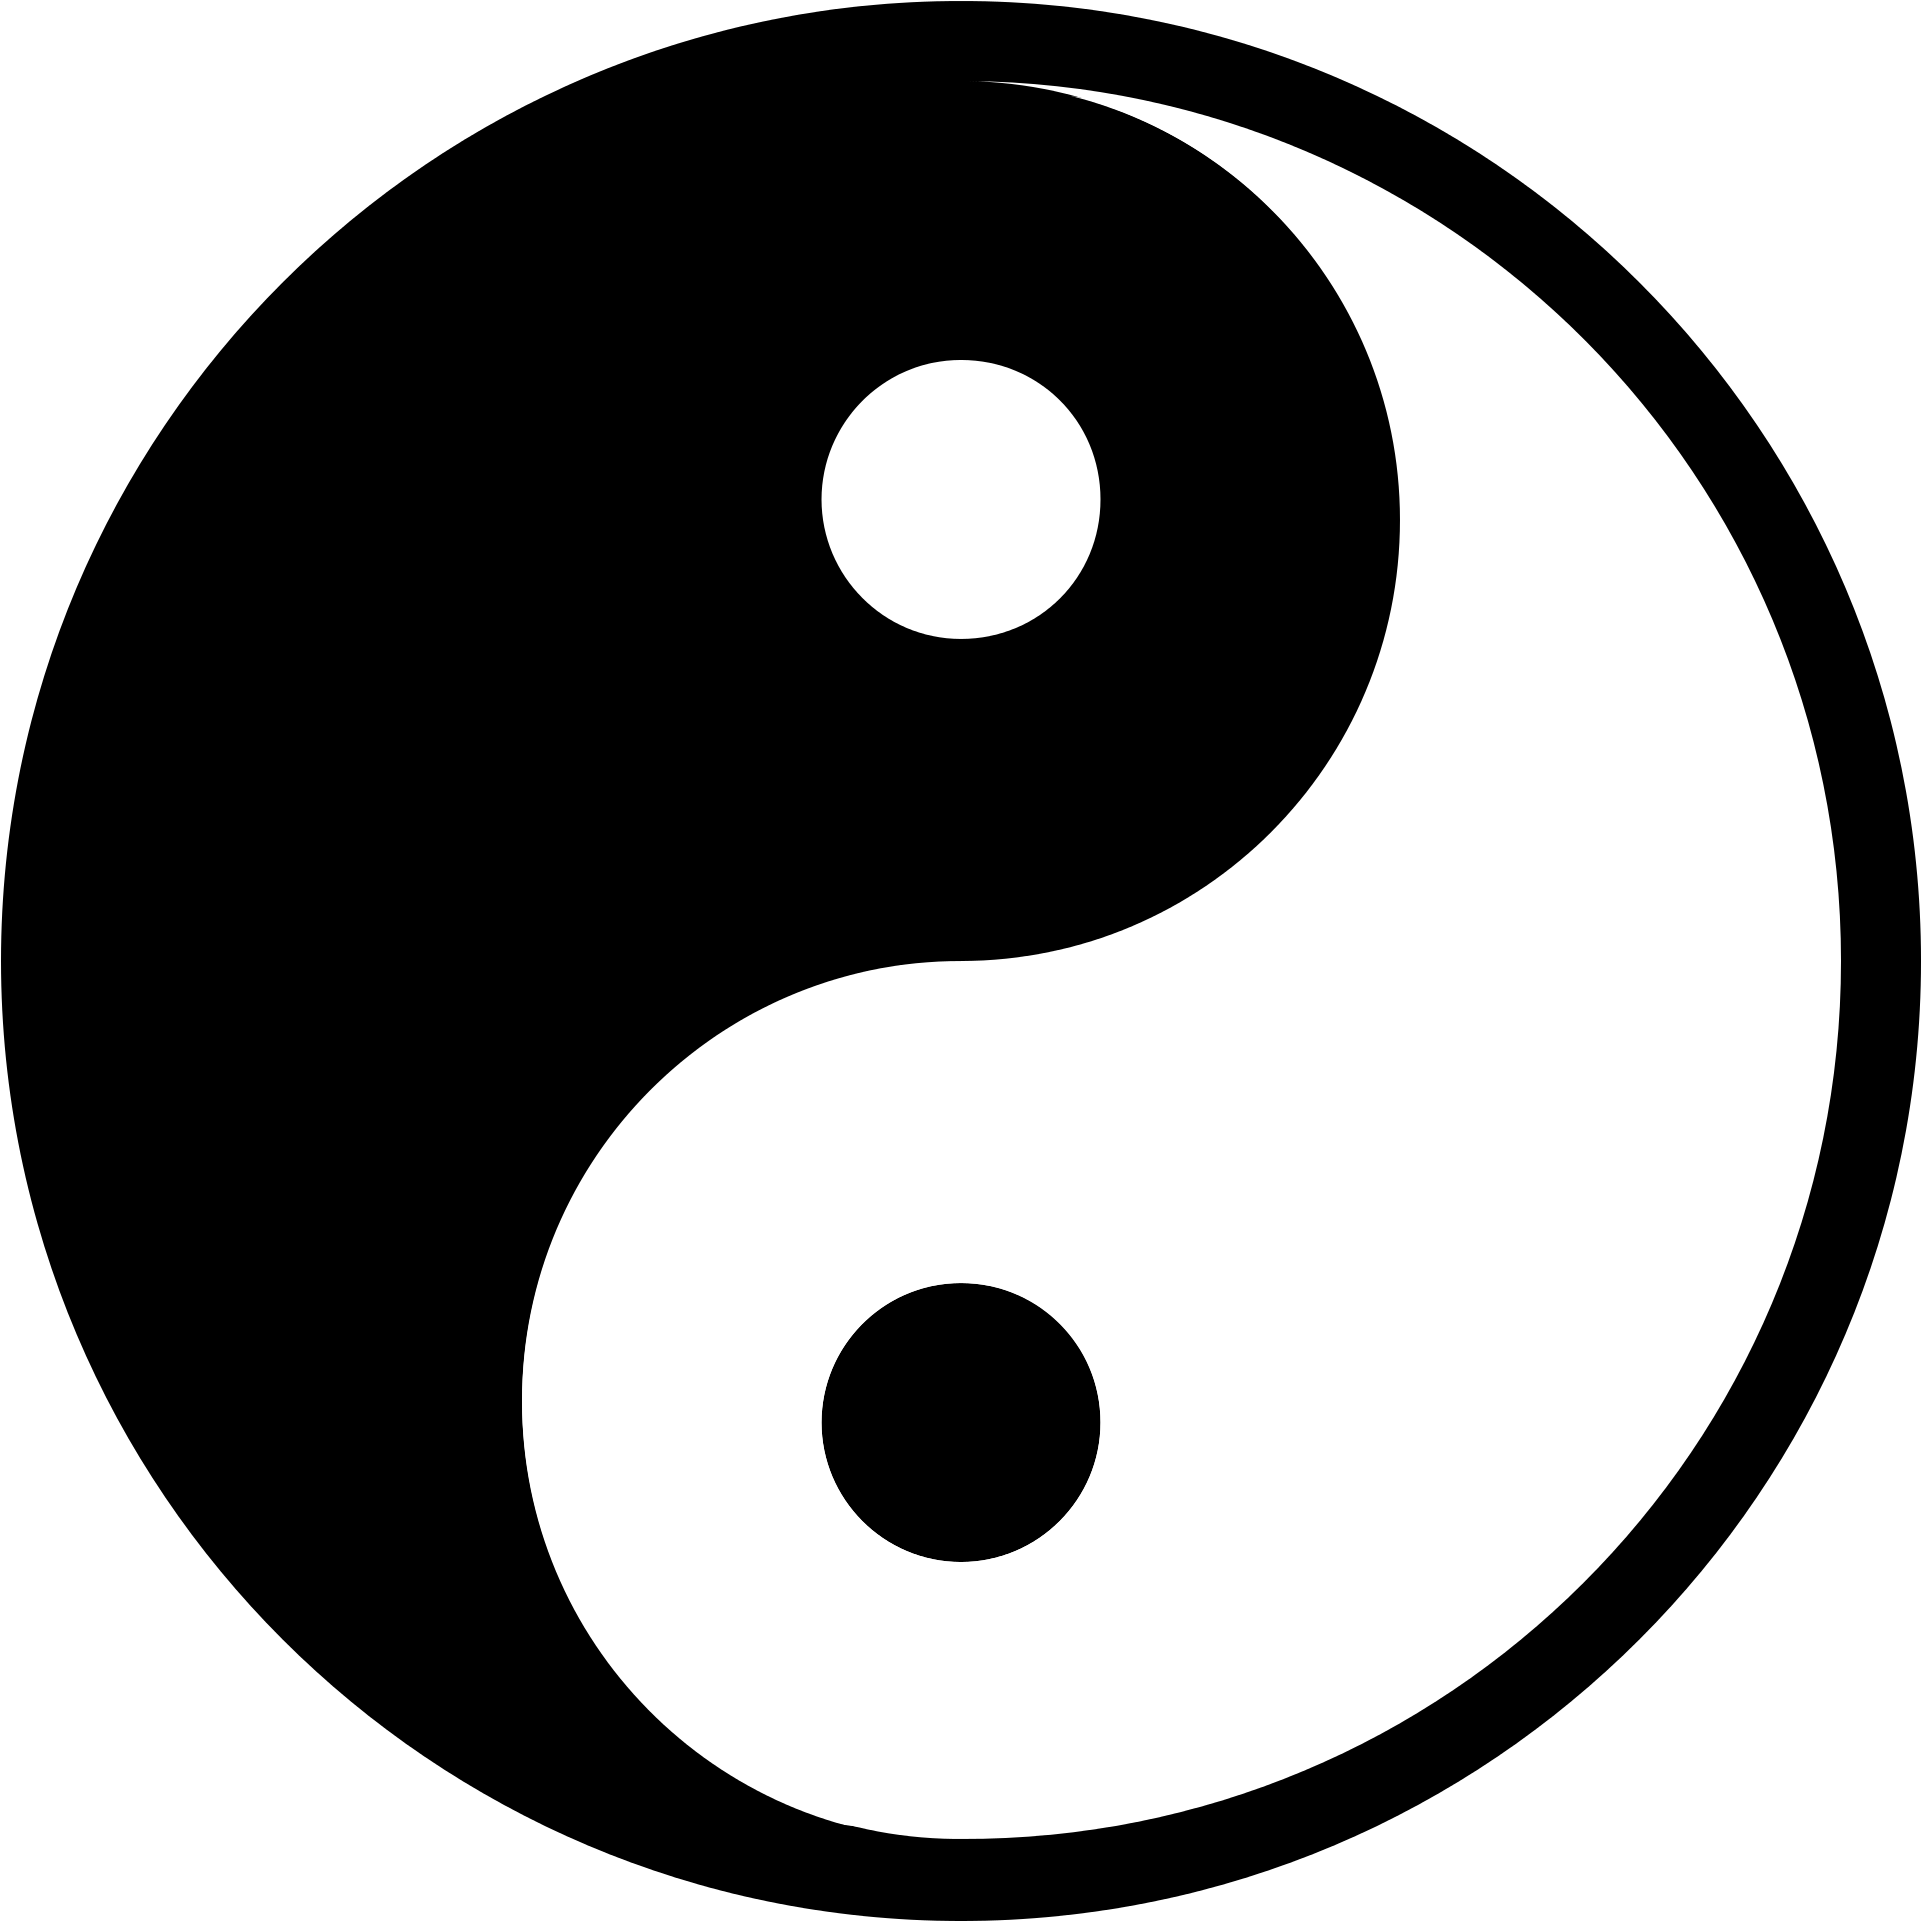 Symbol Yin and yang - yin yang png download - 1697*2400 - Free ...